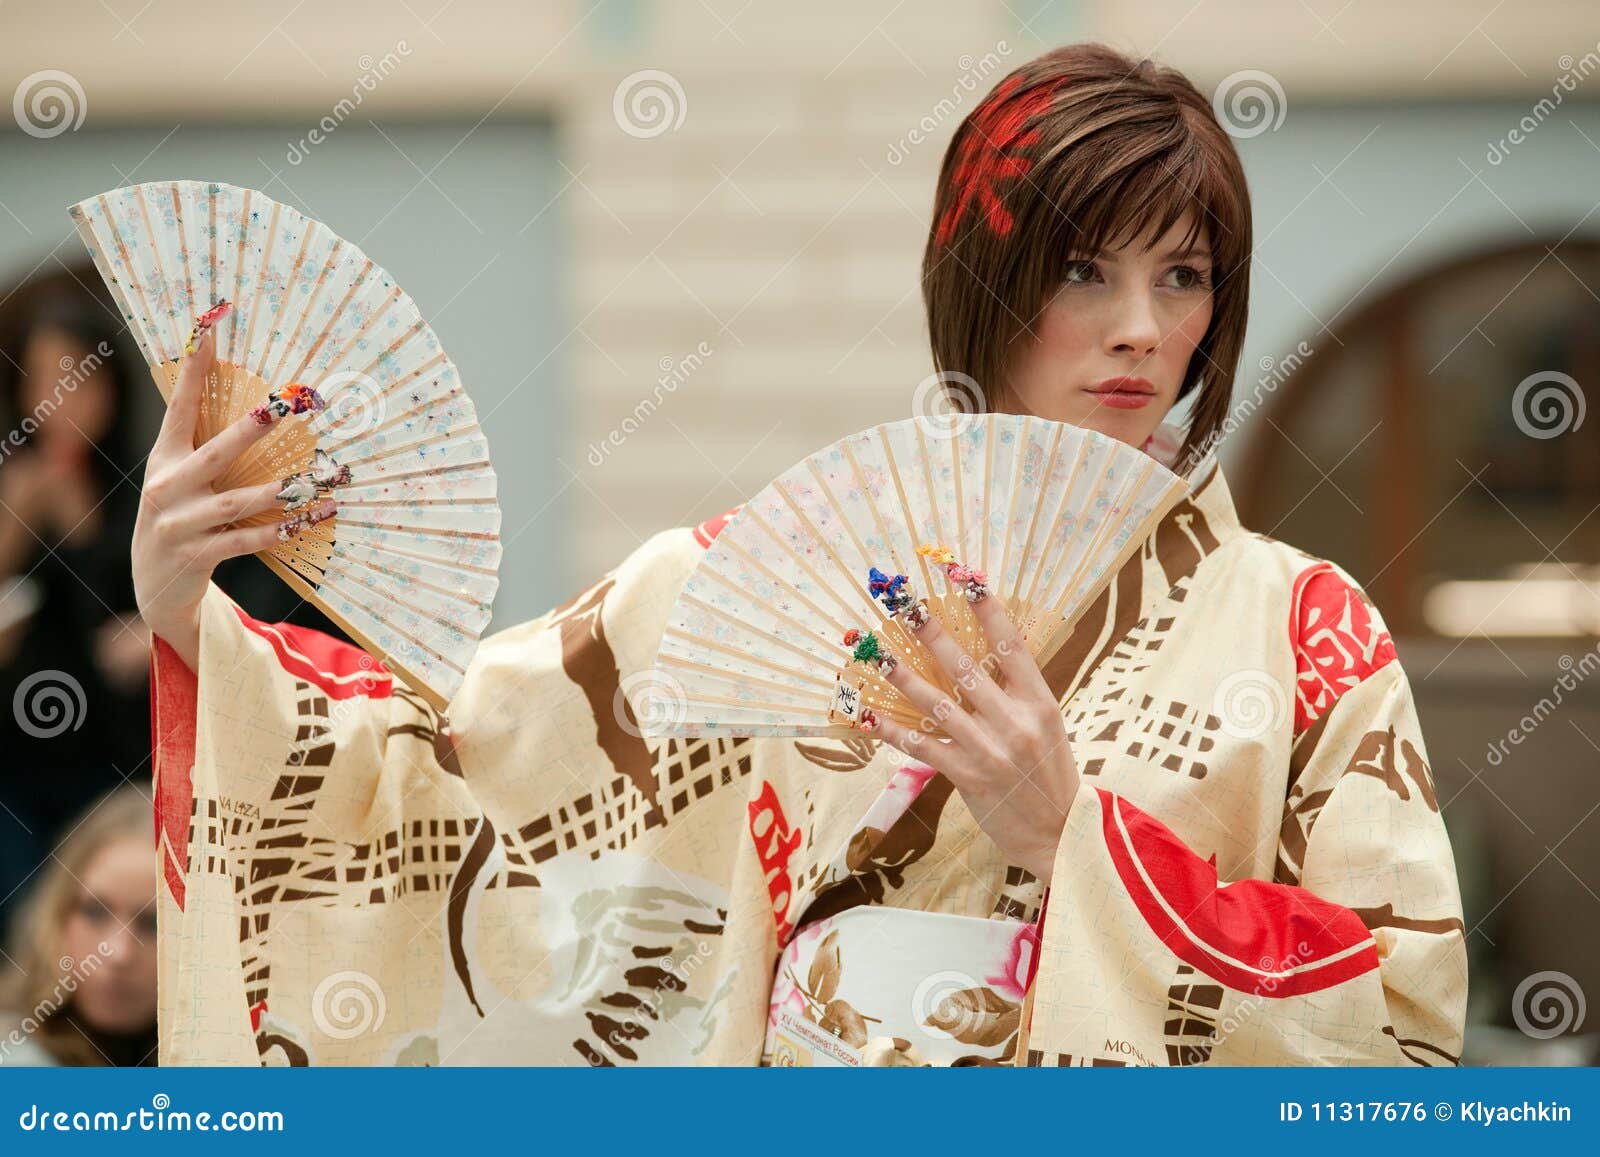 Kimono giapponese sveglio. Modello russo della ragazza, simbolizzante la coltura giapponese. Pedicure della concorrenza. Modello del lavoro di parrucchiere della concorrenza. La competizione internazionale per il mondo di bellezza Mosca 2009 1.4 l'ottobre 2009 a Mosca, indicato la sua abilità acquista padronanza del lavoro di parrucchiere